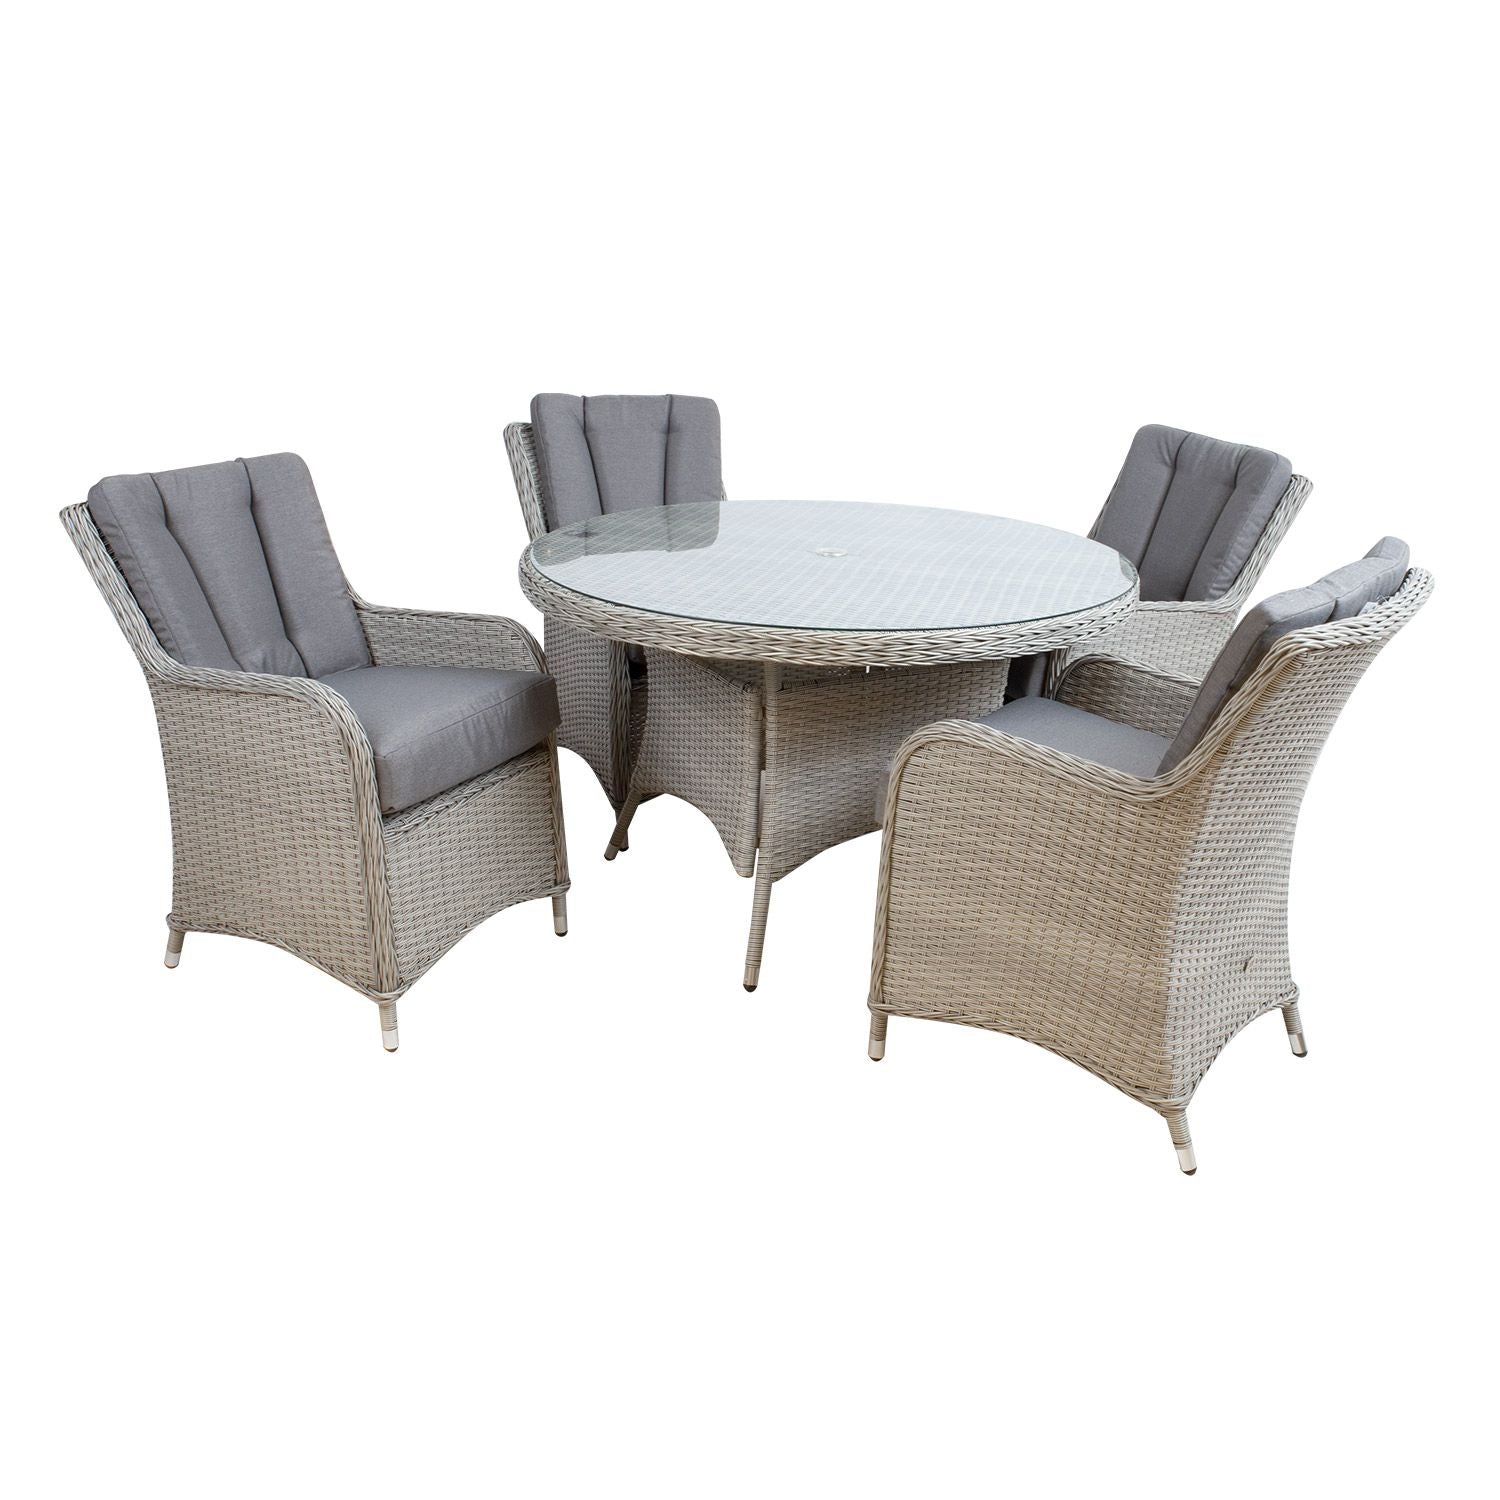 Sodo baldų komplektas ASCOTL: apvalus stalas ir 4 kėdės.